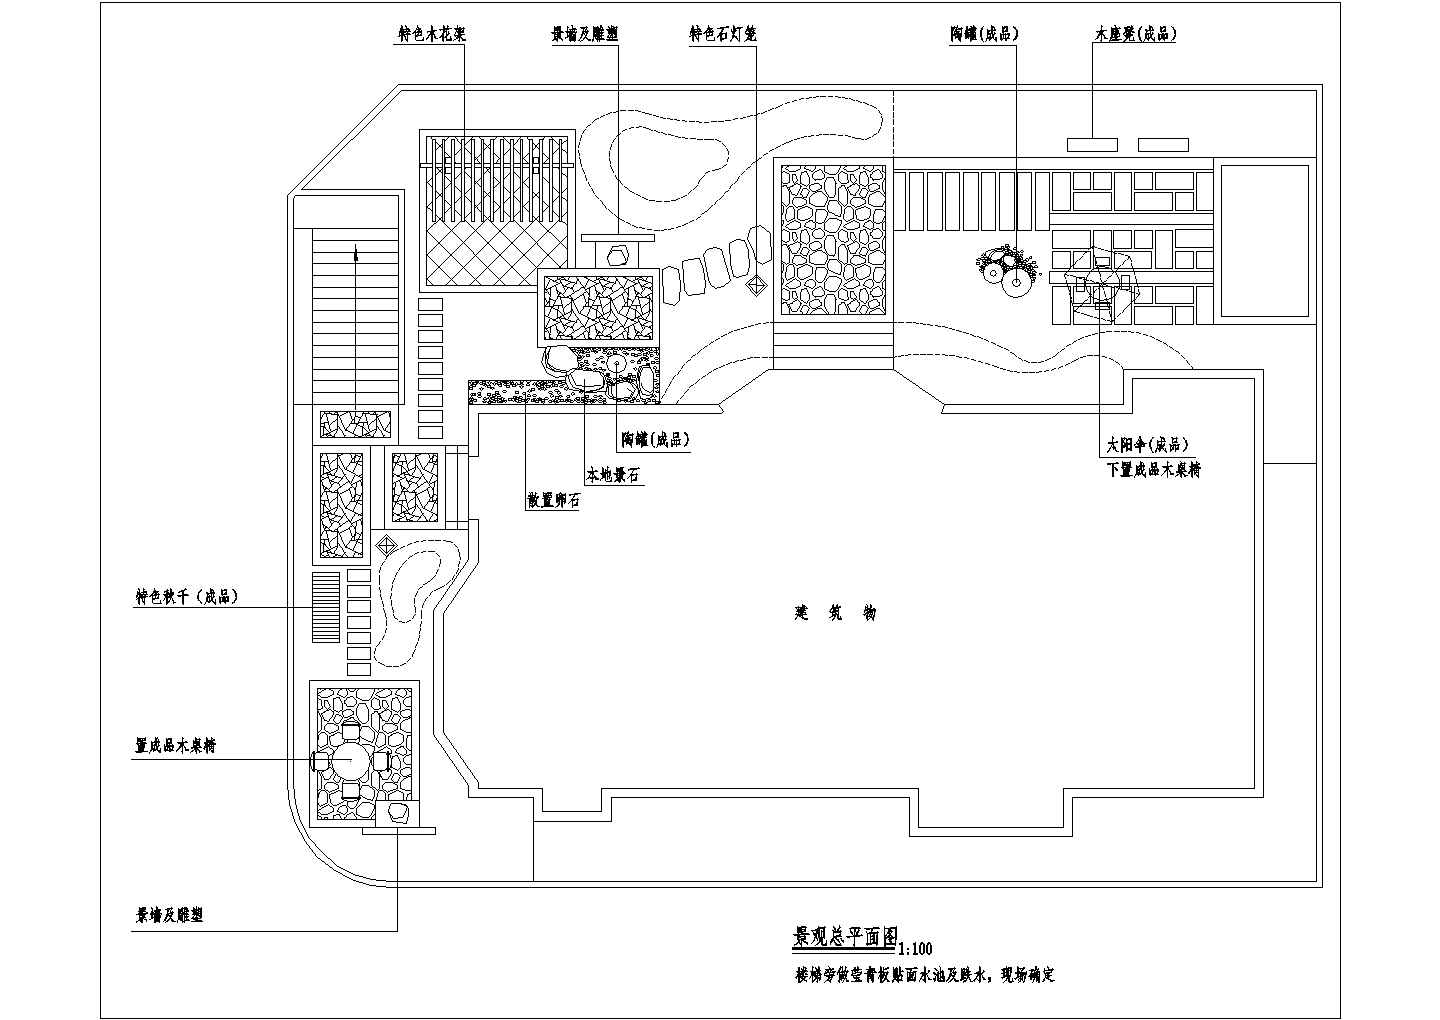 德阳市大型批发市场的屋顶景观花园平面绿化设计CAD图纸